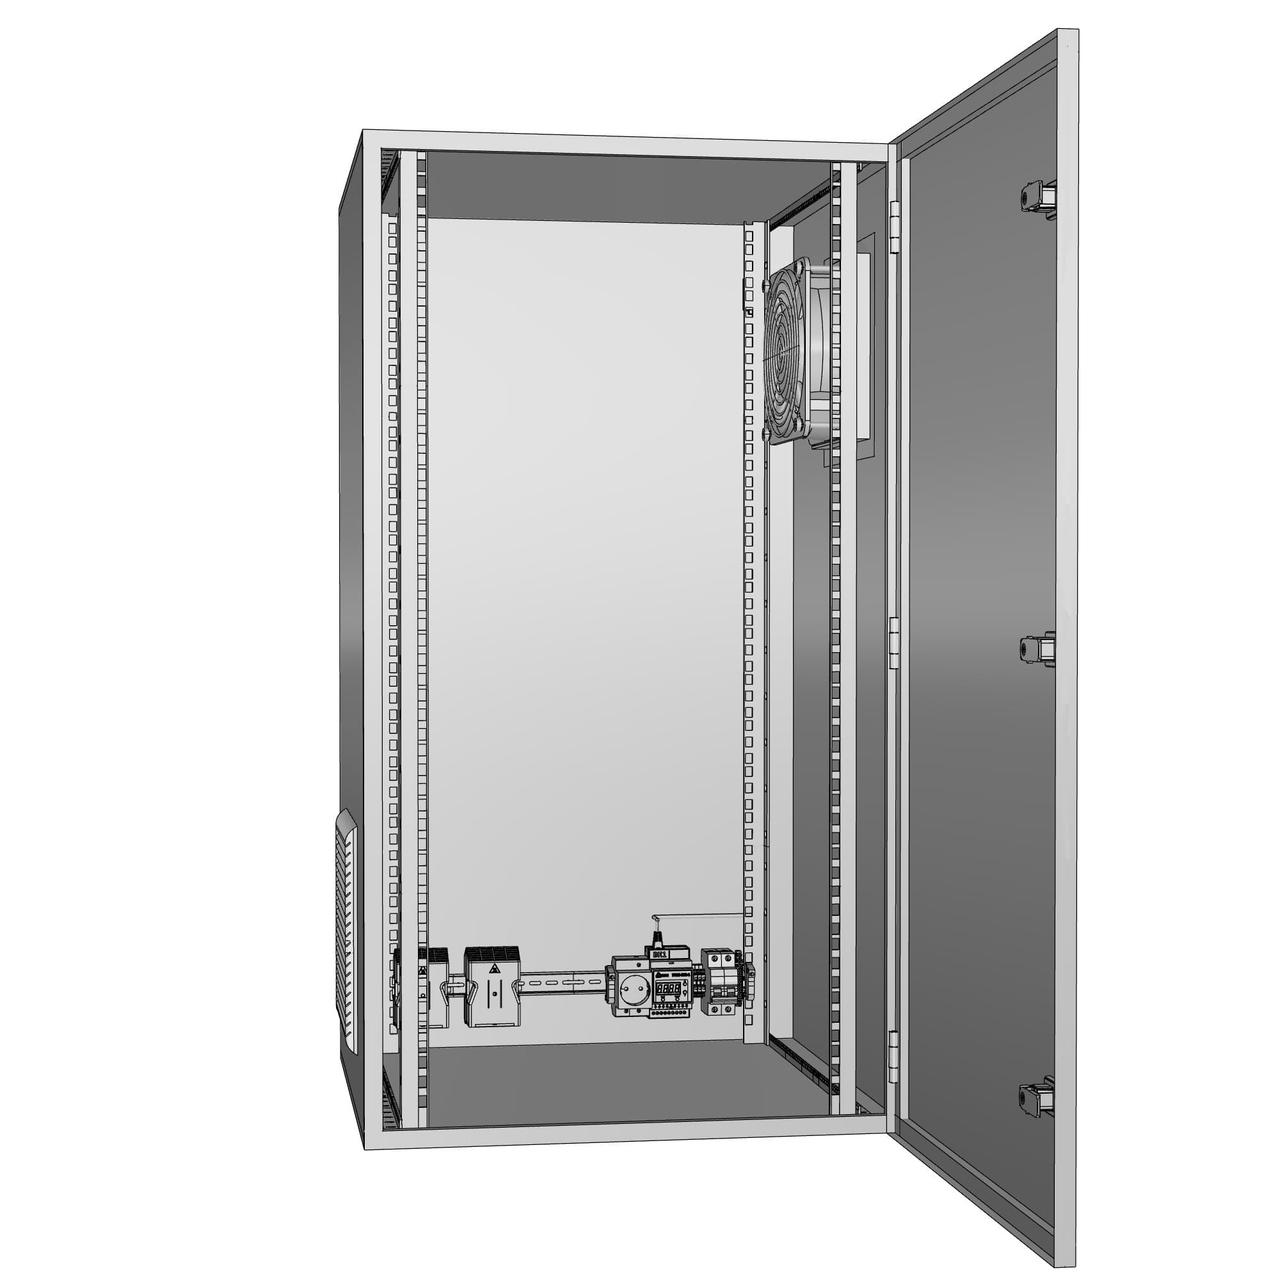 Шкаф климатический утеплённый с обогревом и вентиляцией ЩКу- ОВ- 7 - 1200×800×150 (В×Ш×Г) IP65